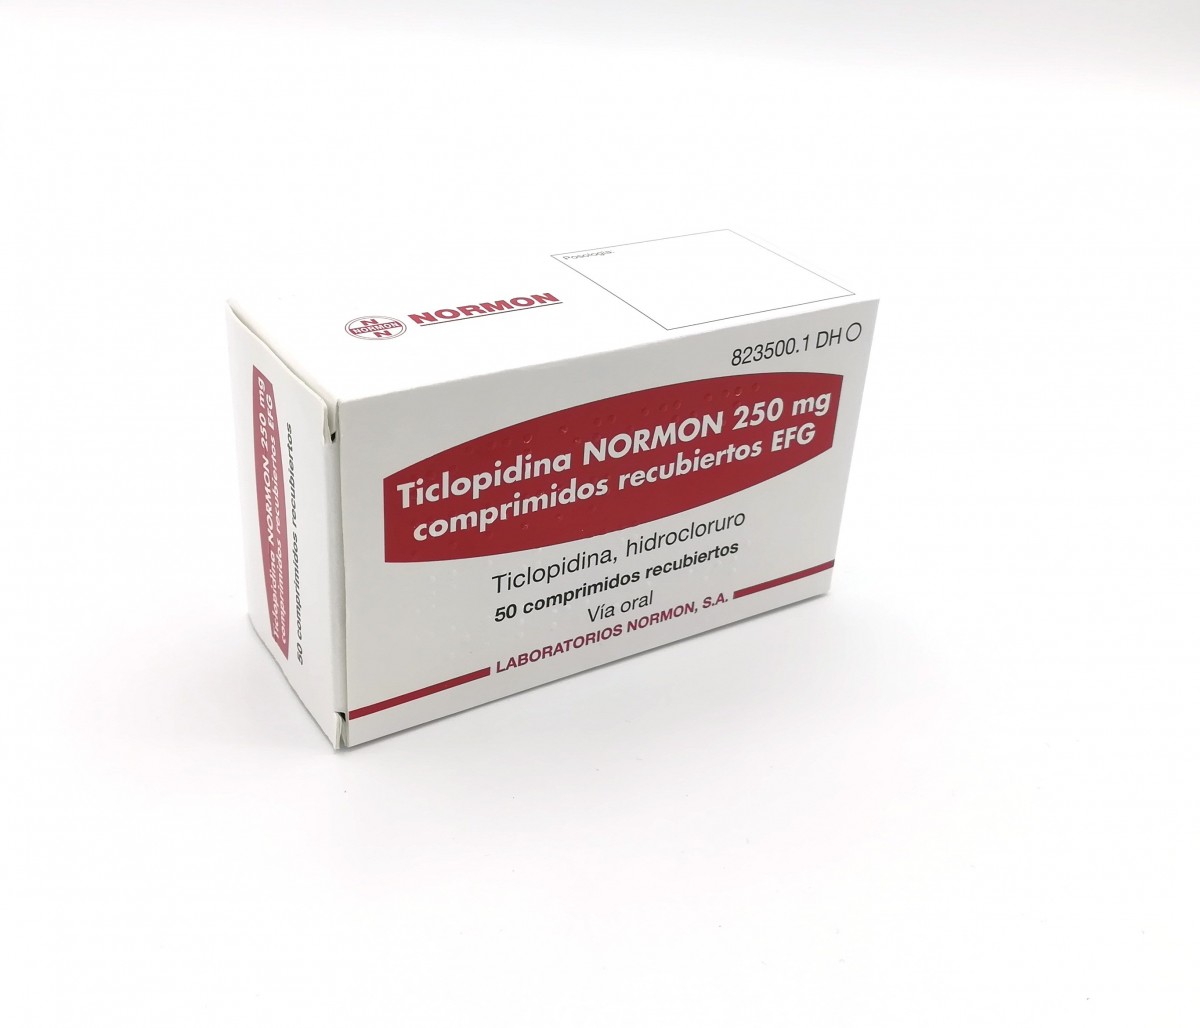 TICLOPIDINA NORMON 250 mg COMPRIMIDOS RECUBIERTOS EFG , 500 comprimidos fotografía del envase.